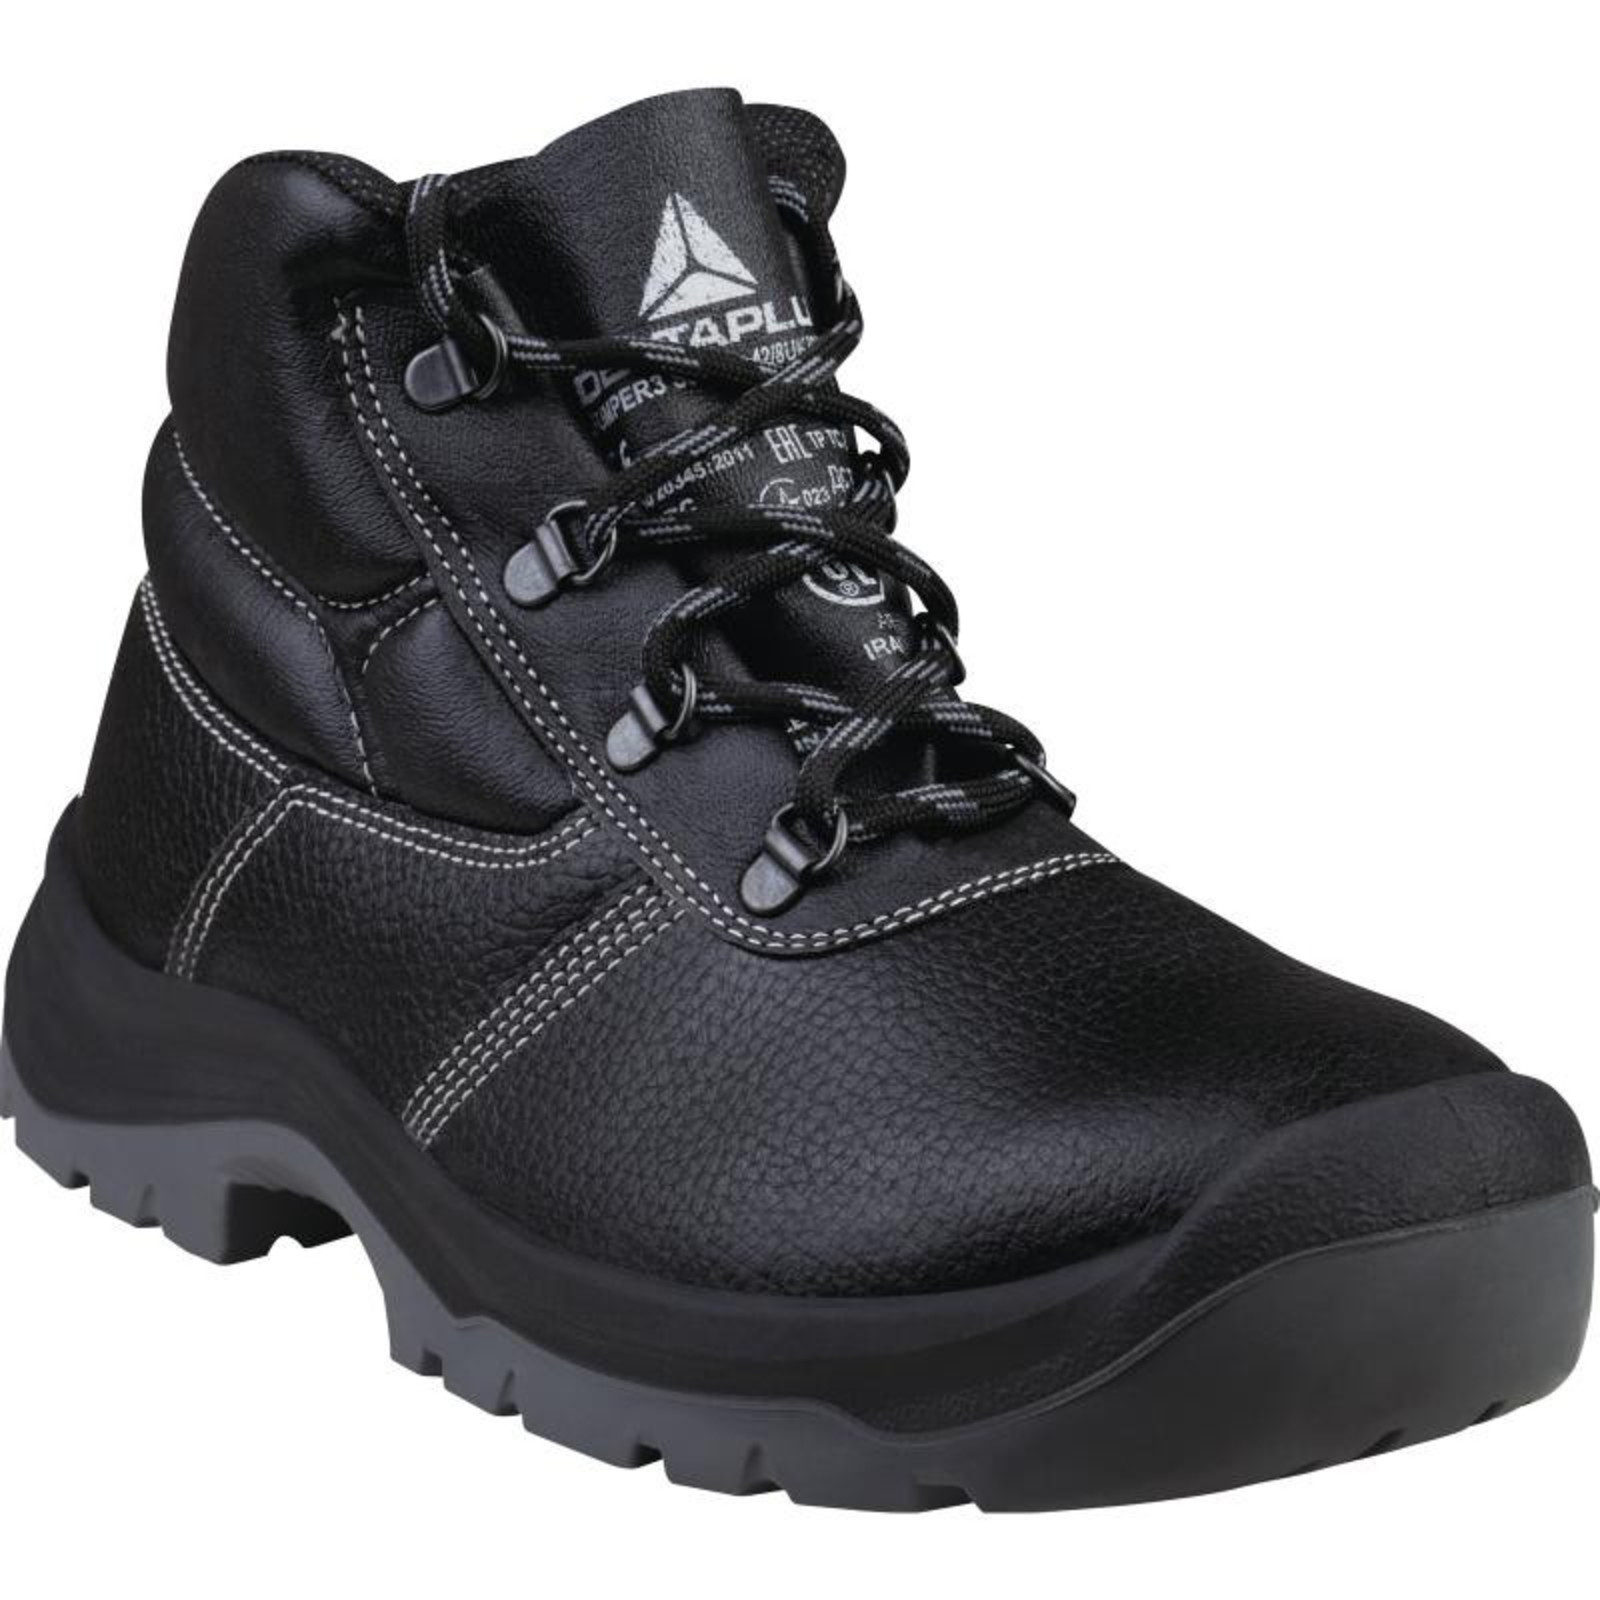 Členková bezpečnostná obuv Delta Plus Jumper3 S3 SRC - veľkosť: 42, farba: čierna